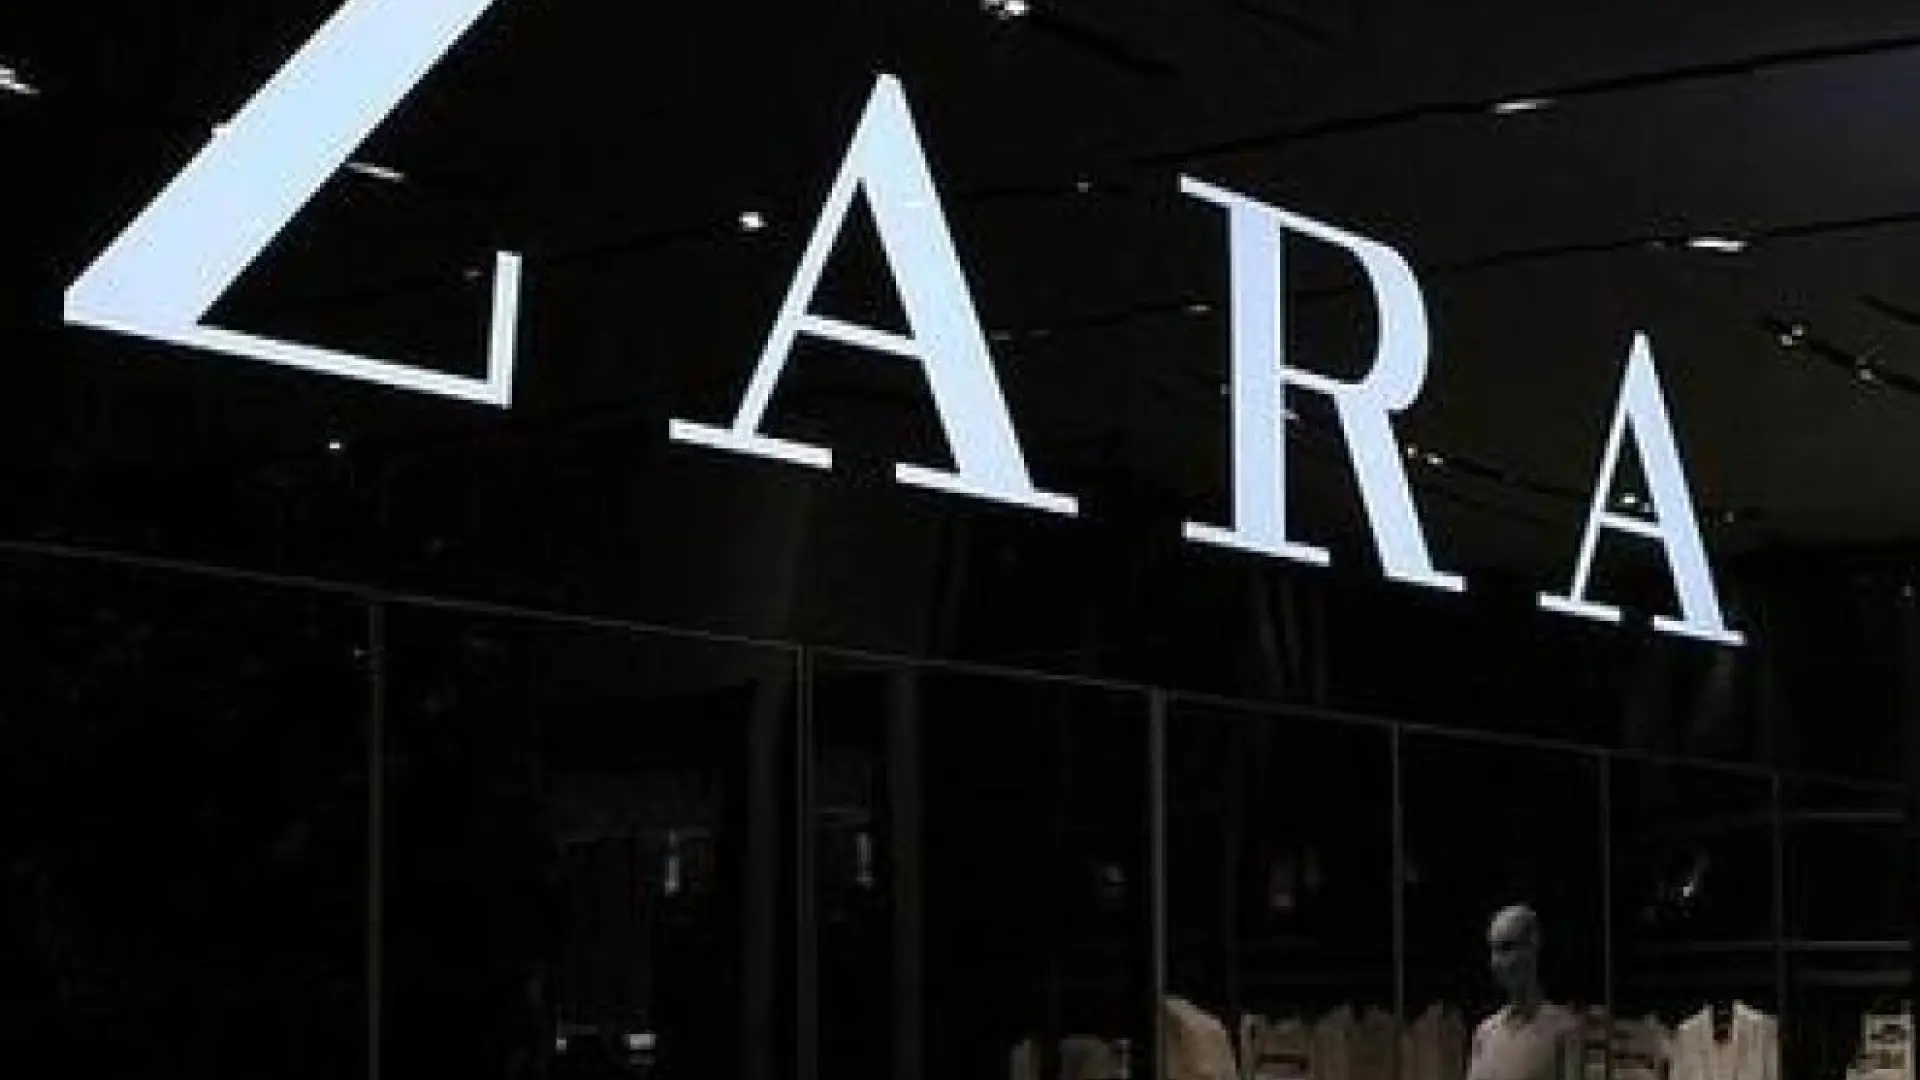 Economía en Almería  Zara cerrará en octubre su tienda del Paseo